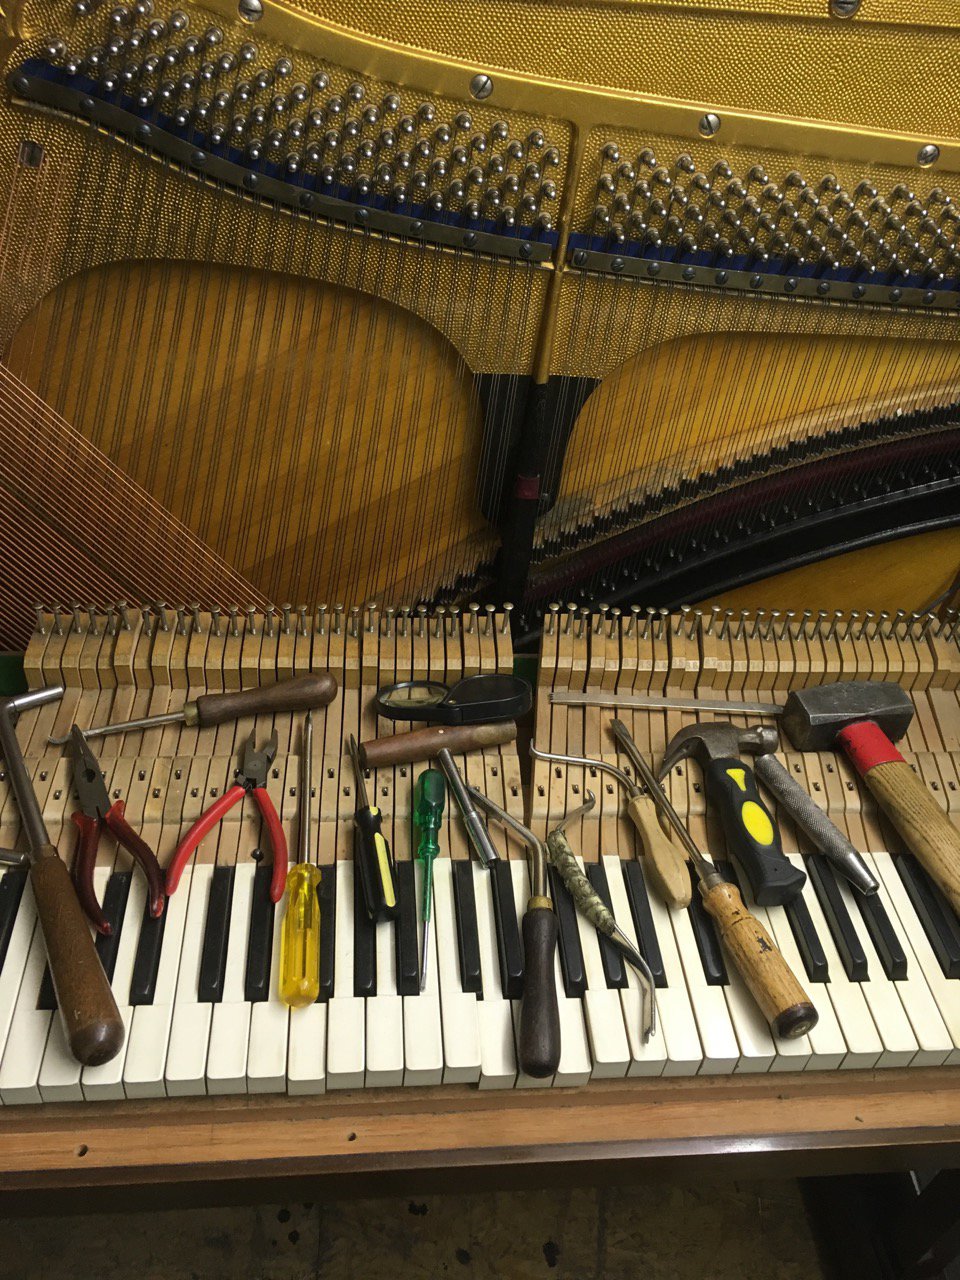  Техника замены вирбелей на пианино